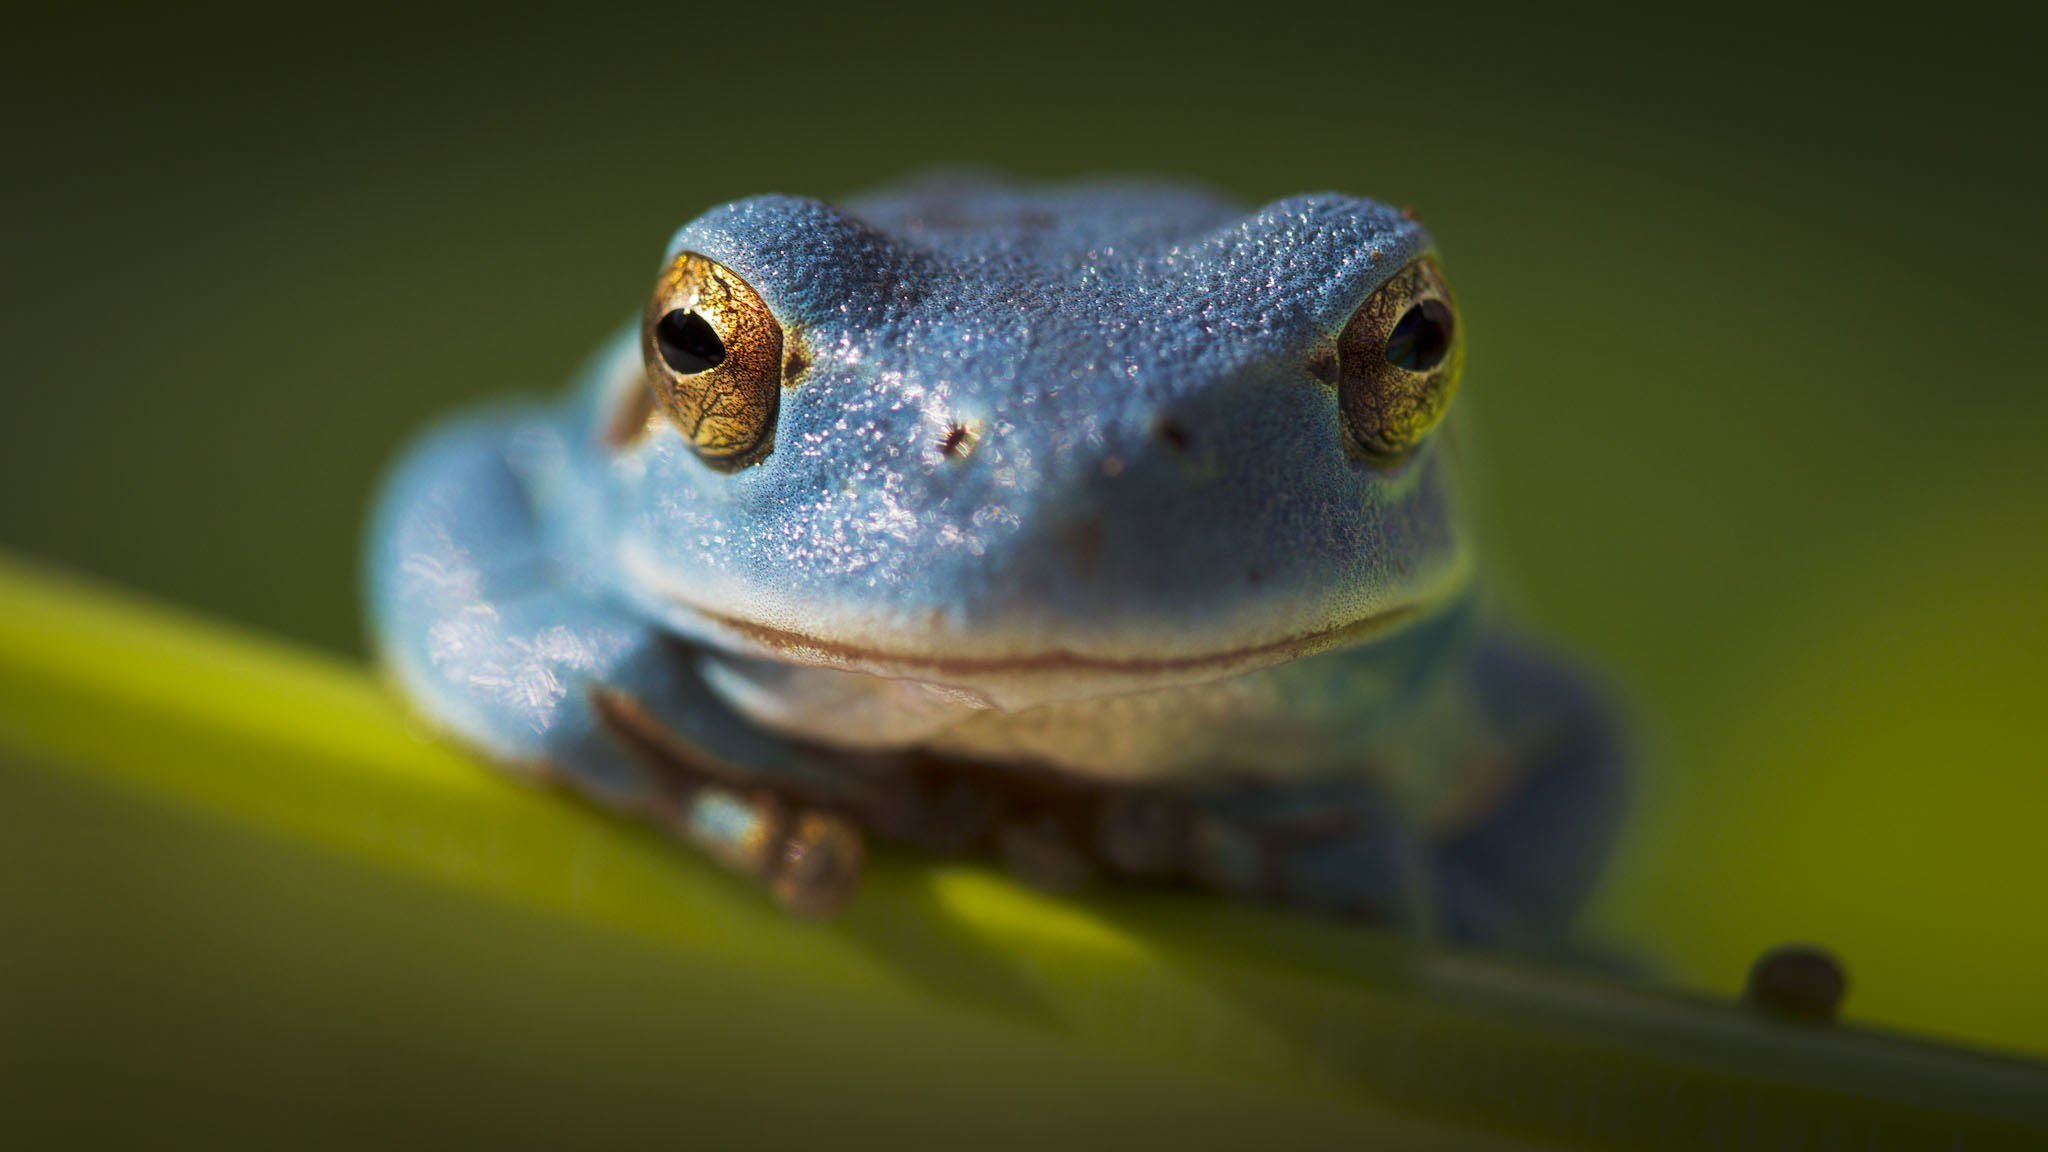 Elephant frog. Лягушка австралийская голубая квакша. Лягушка Прудовая паротиды. Хьюля лягушка. Травяные лягушки, лягушки-турлушки.